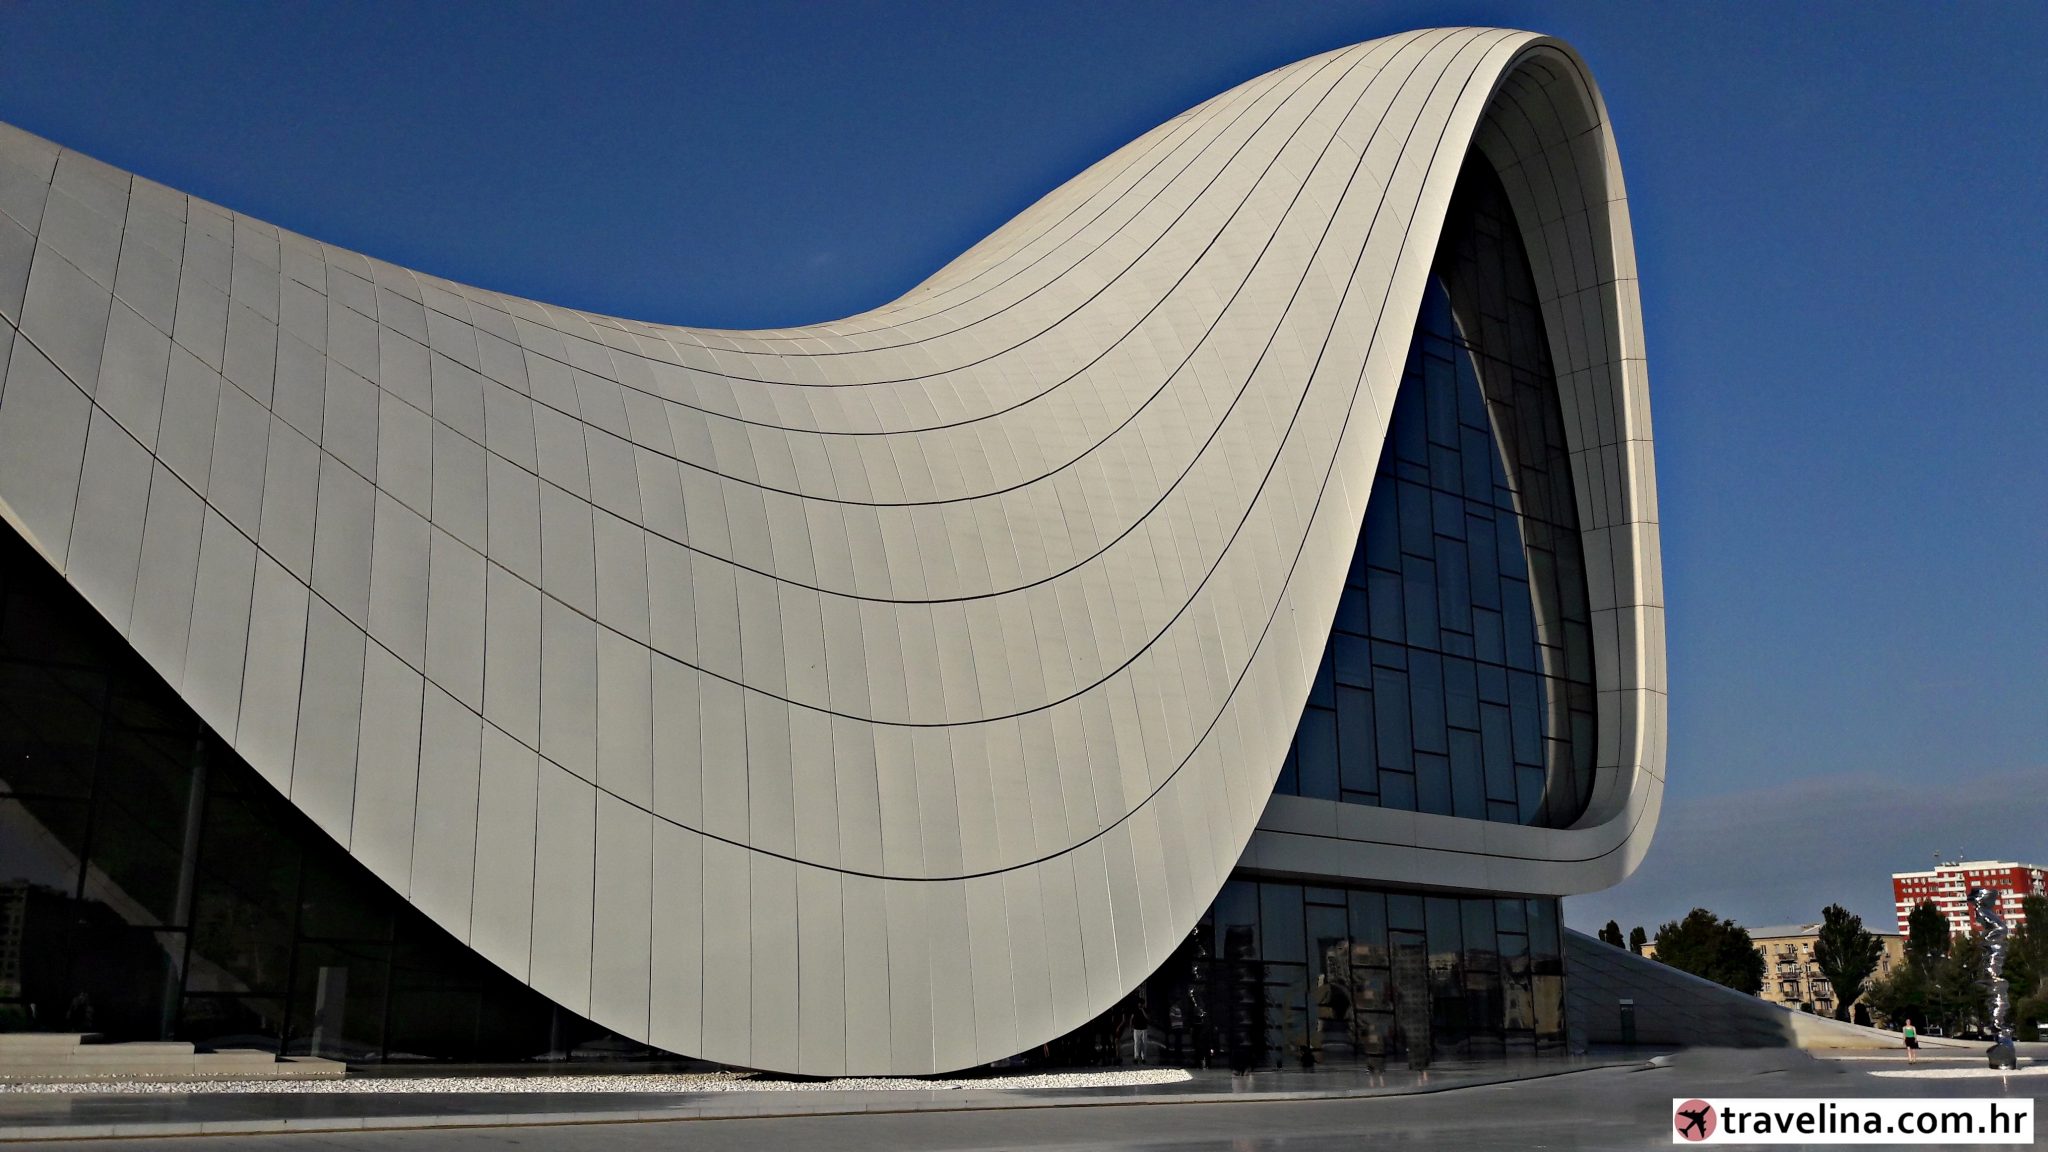 Heydar Aliyev Cultural Center by Zaha Hadid